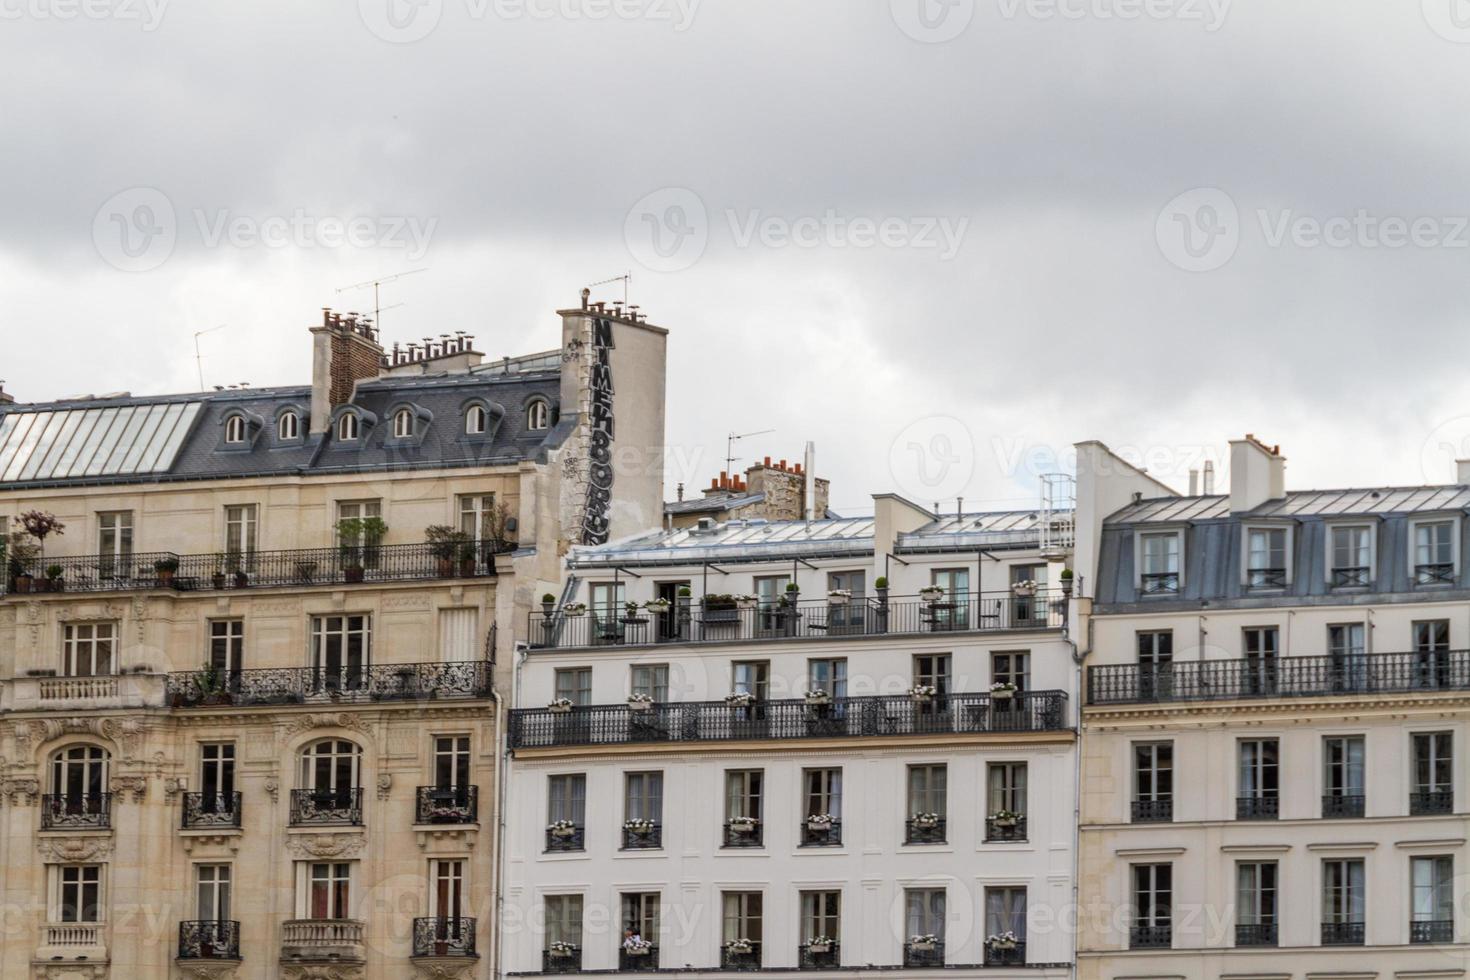 belle strade parigine vista parigi, francia europa foto